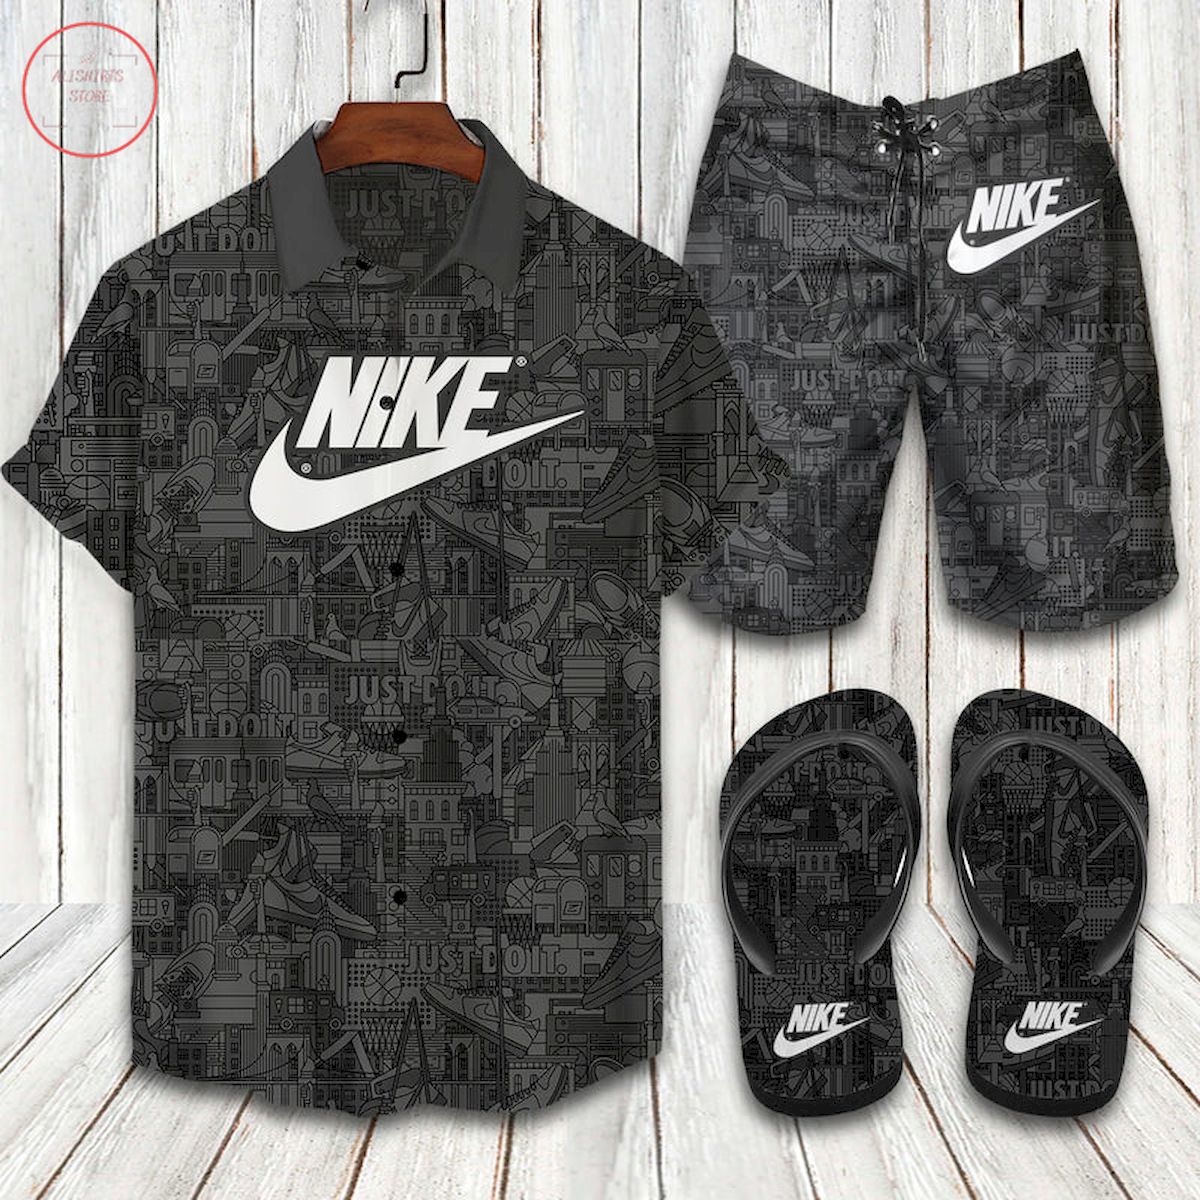 Nike All Black Hawaiian Shirt and Shorts